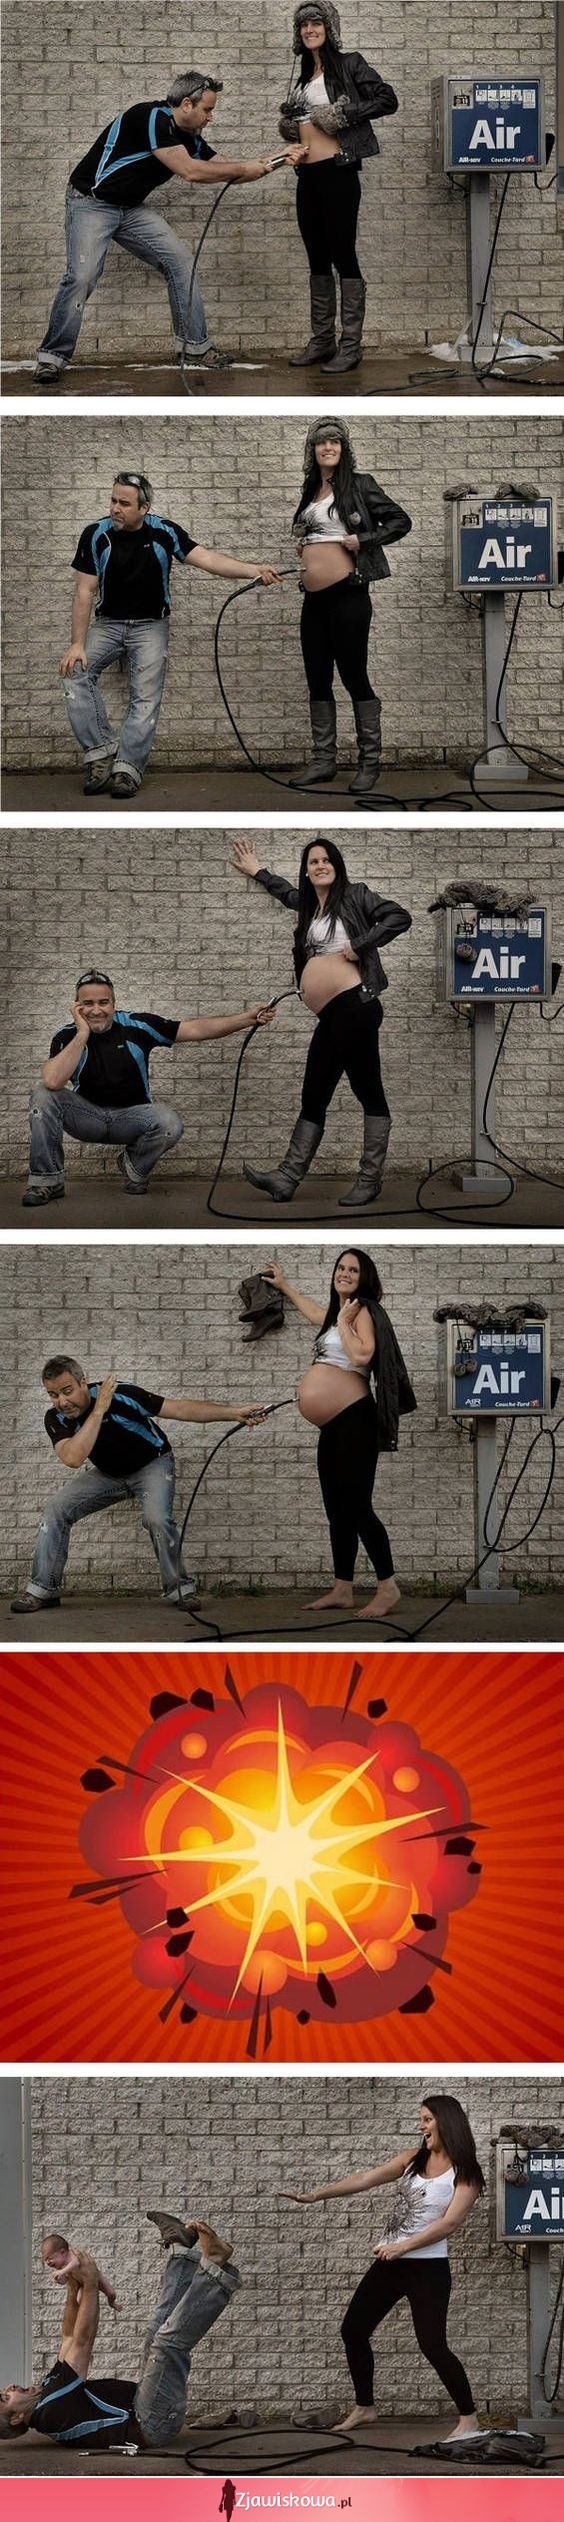 Jak w zabawny sposób przedstawić ciążę na fotografiach :D Świetny pomysł!